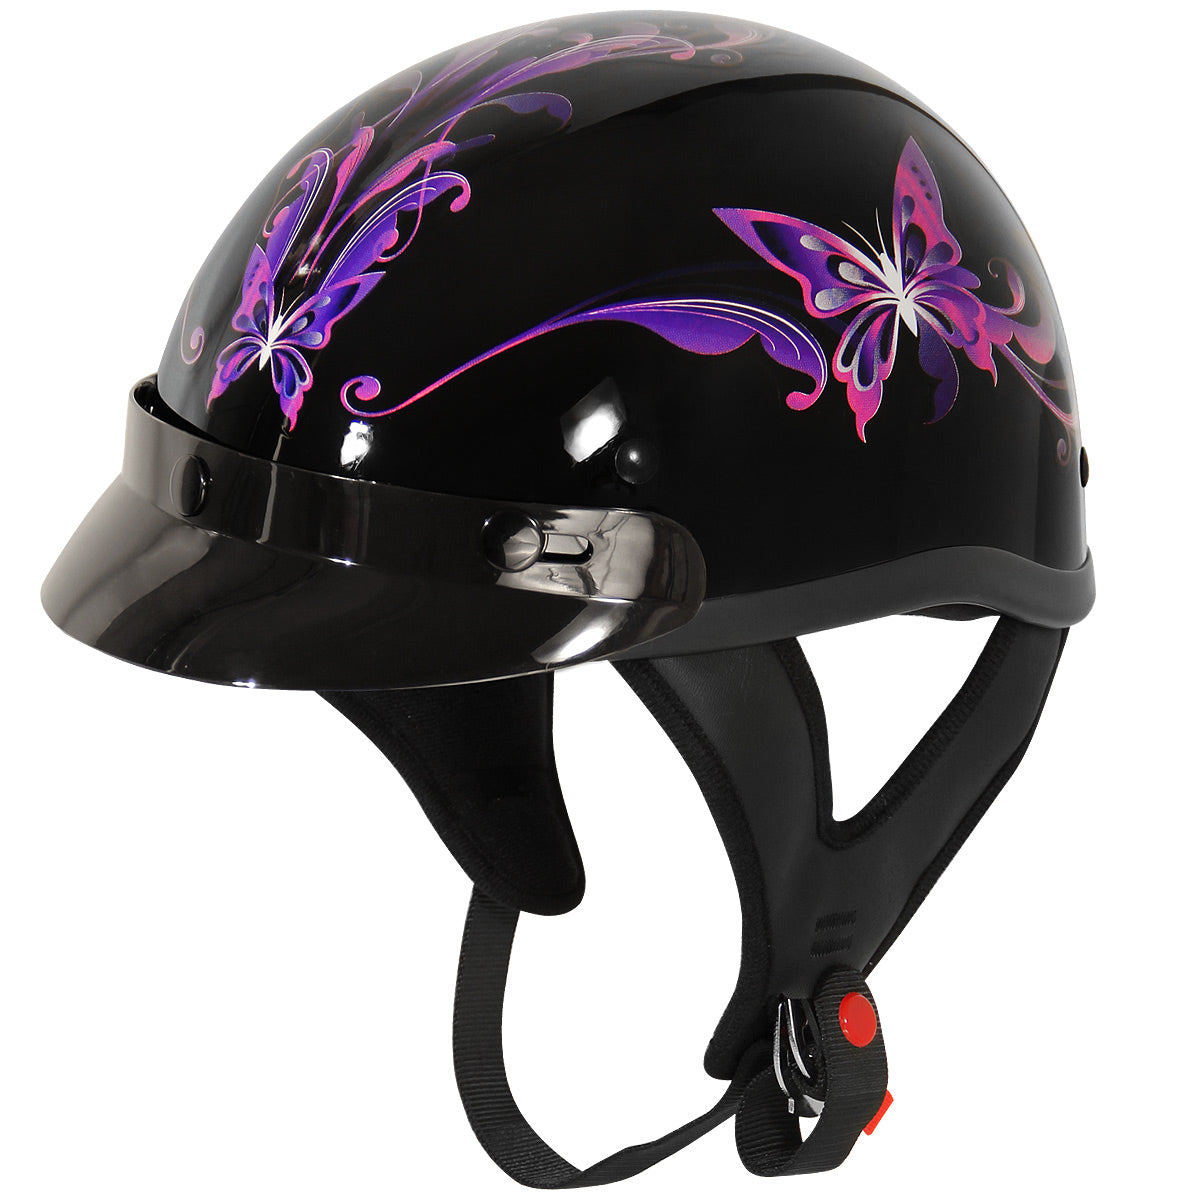 Outlaw Helmets T70 Glossy Black Purple Butterfly Motorcycle Half Helmet